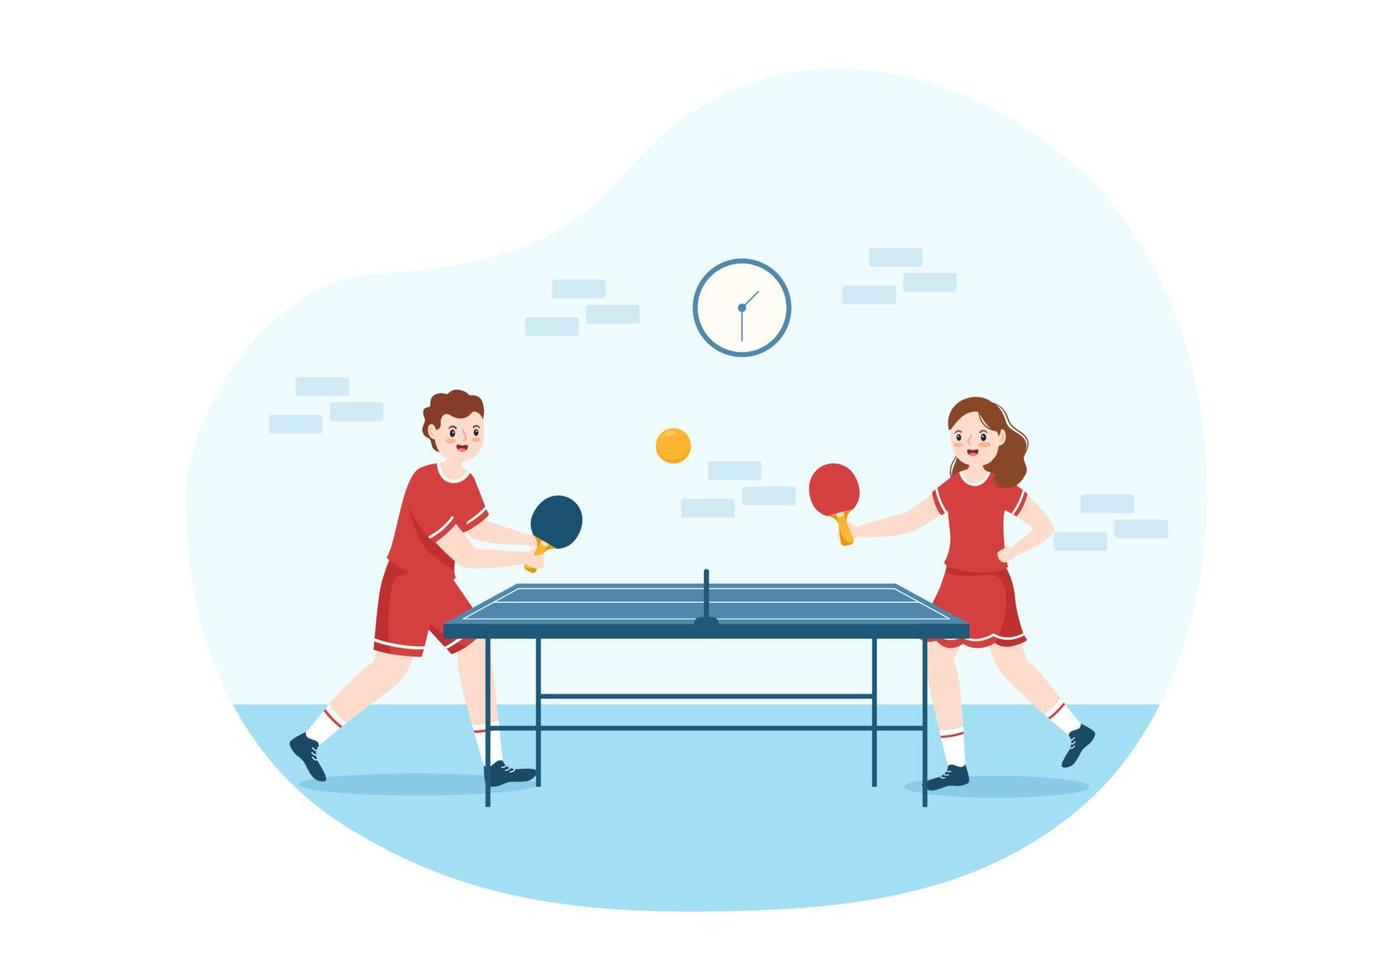 människor spelar tabell tennis sporter med racket och boll av ping pong spel match i platt tecknad serie hand dragen mallar illustration vektor